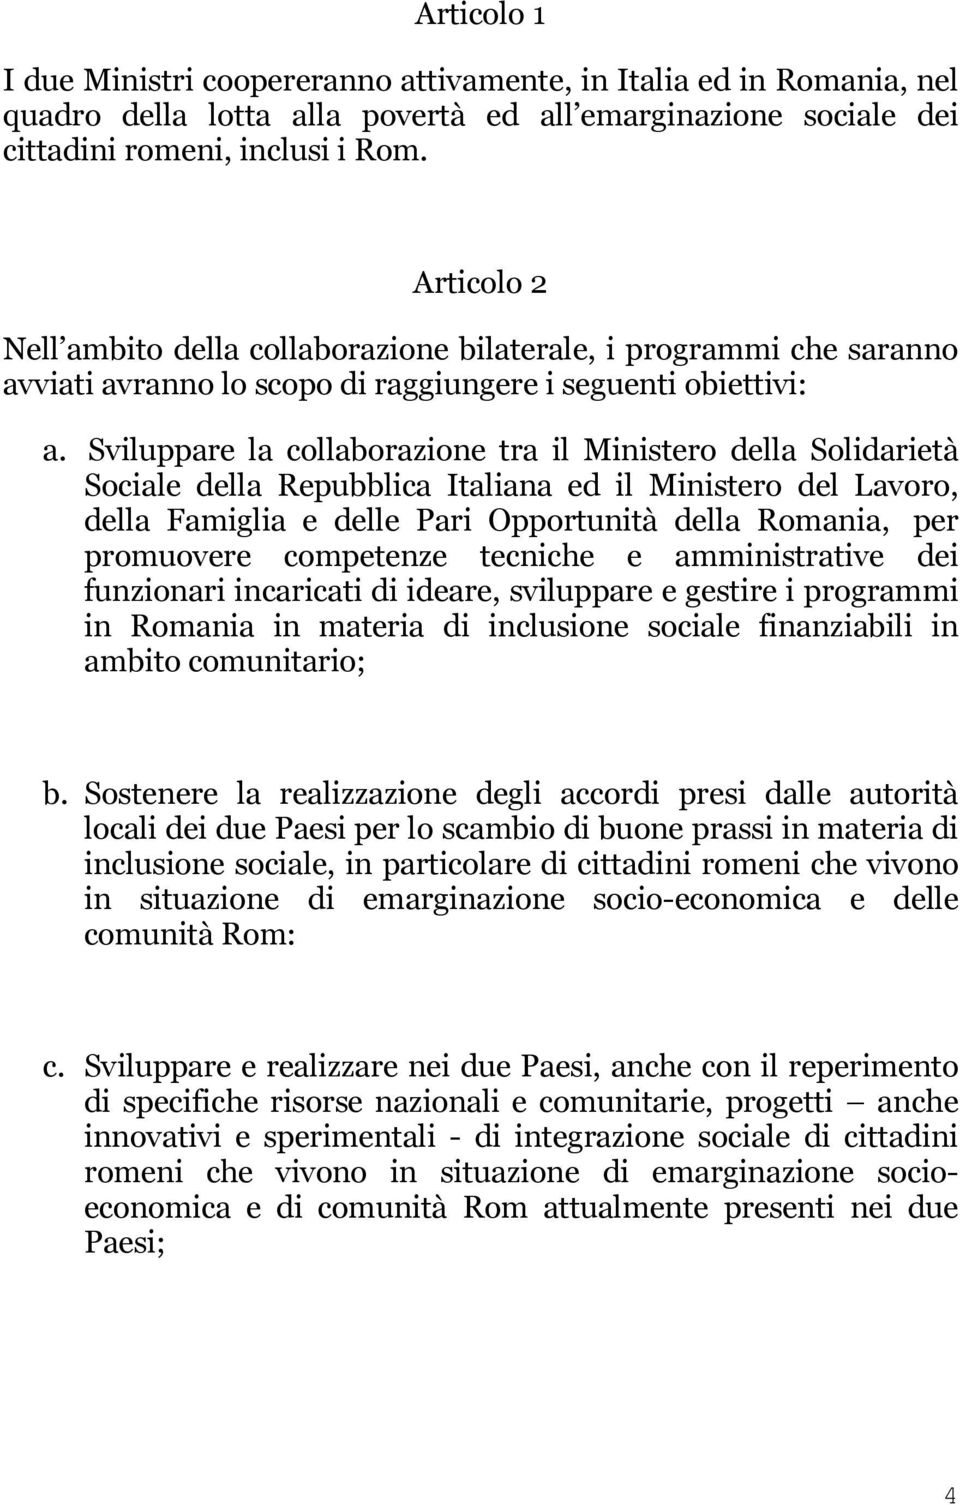 Sviluppare la collaborazione tra il Ministero della Solidarietà Sociale della Repubblica Italiana ed il Ministero del Lavoro, della Famiglia e delle Pari Opportunità della Romania, per promuovere